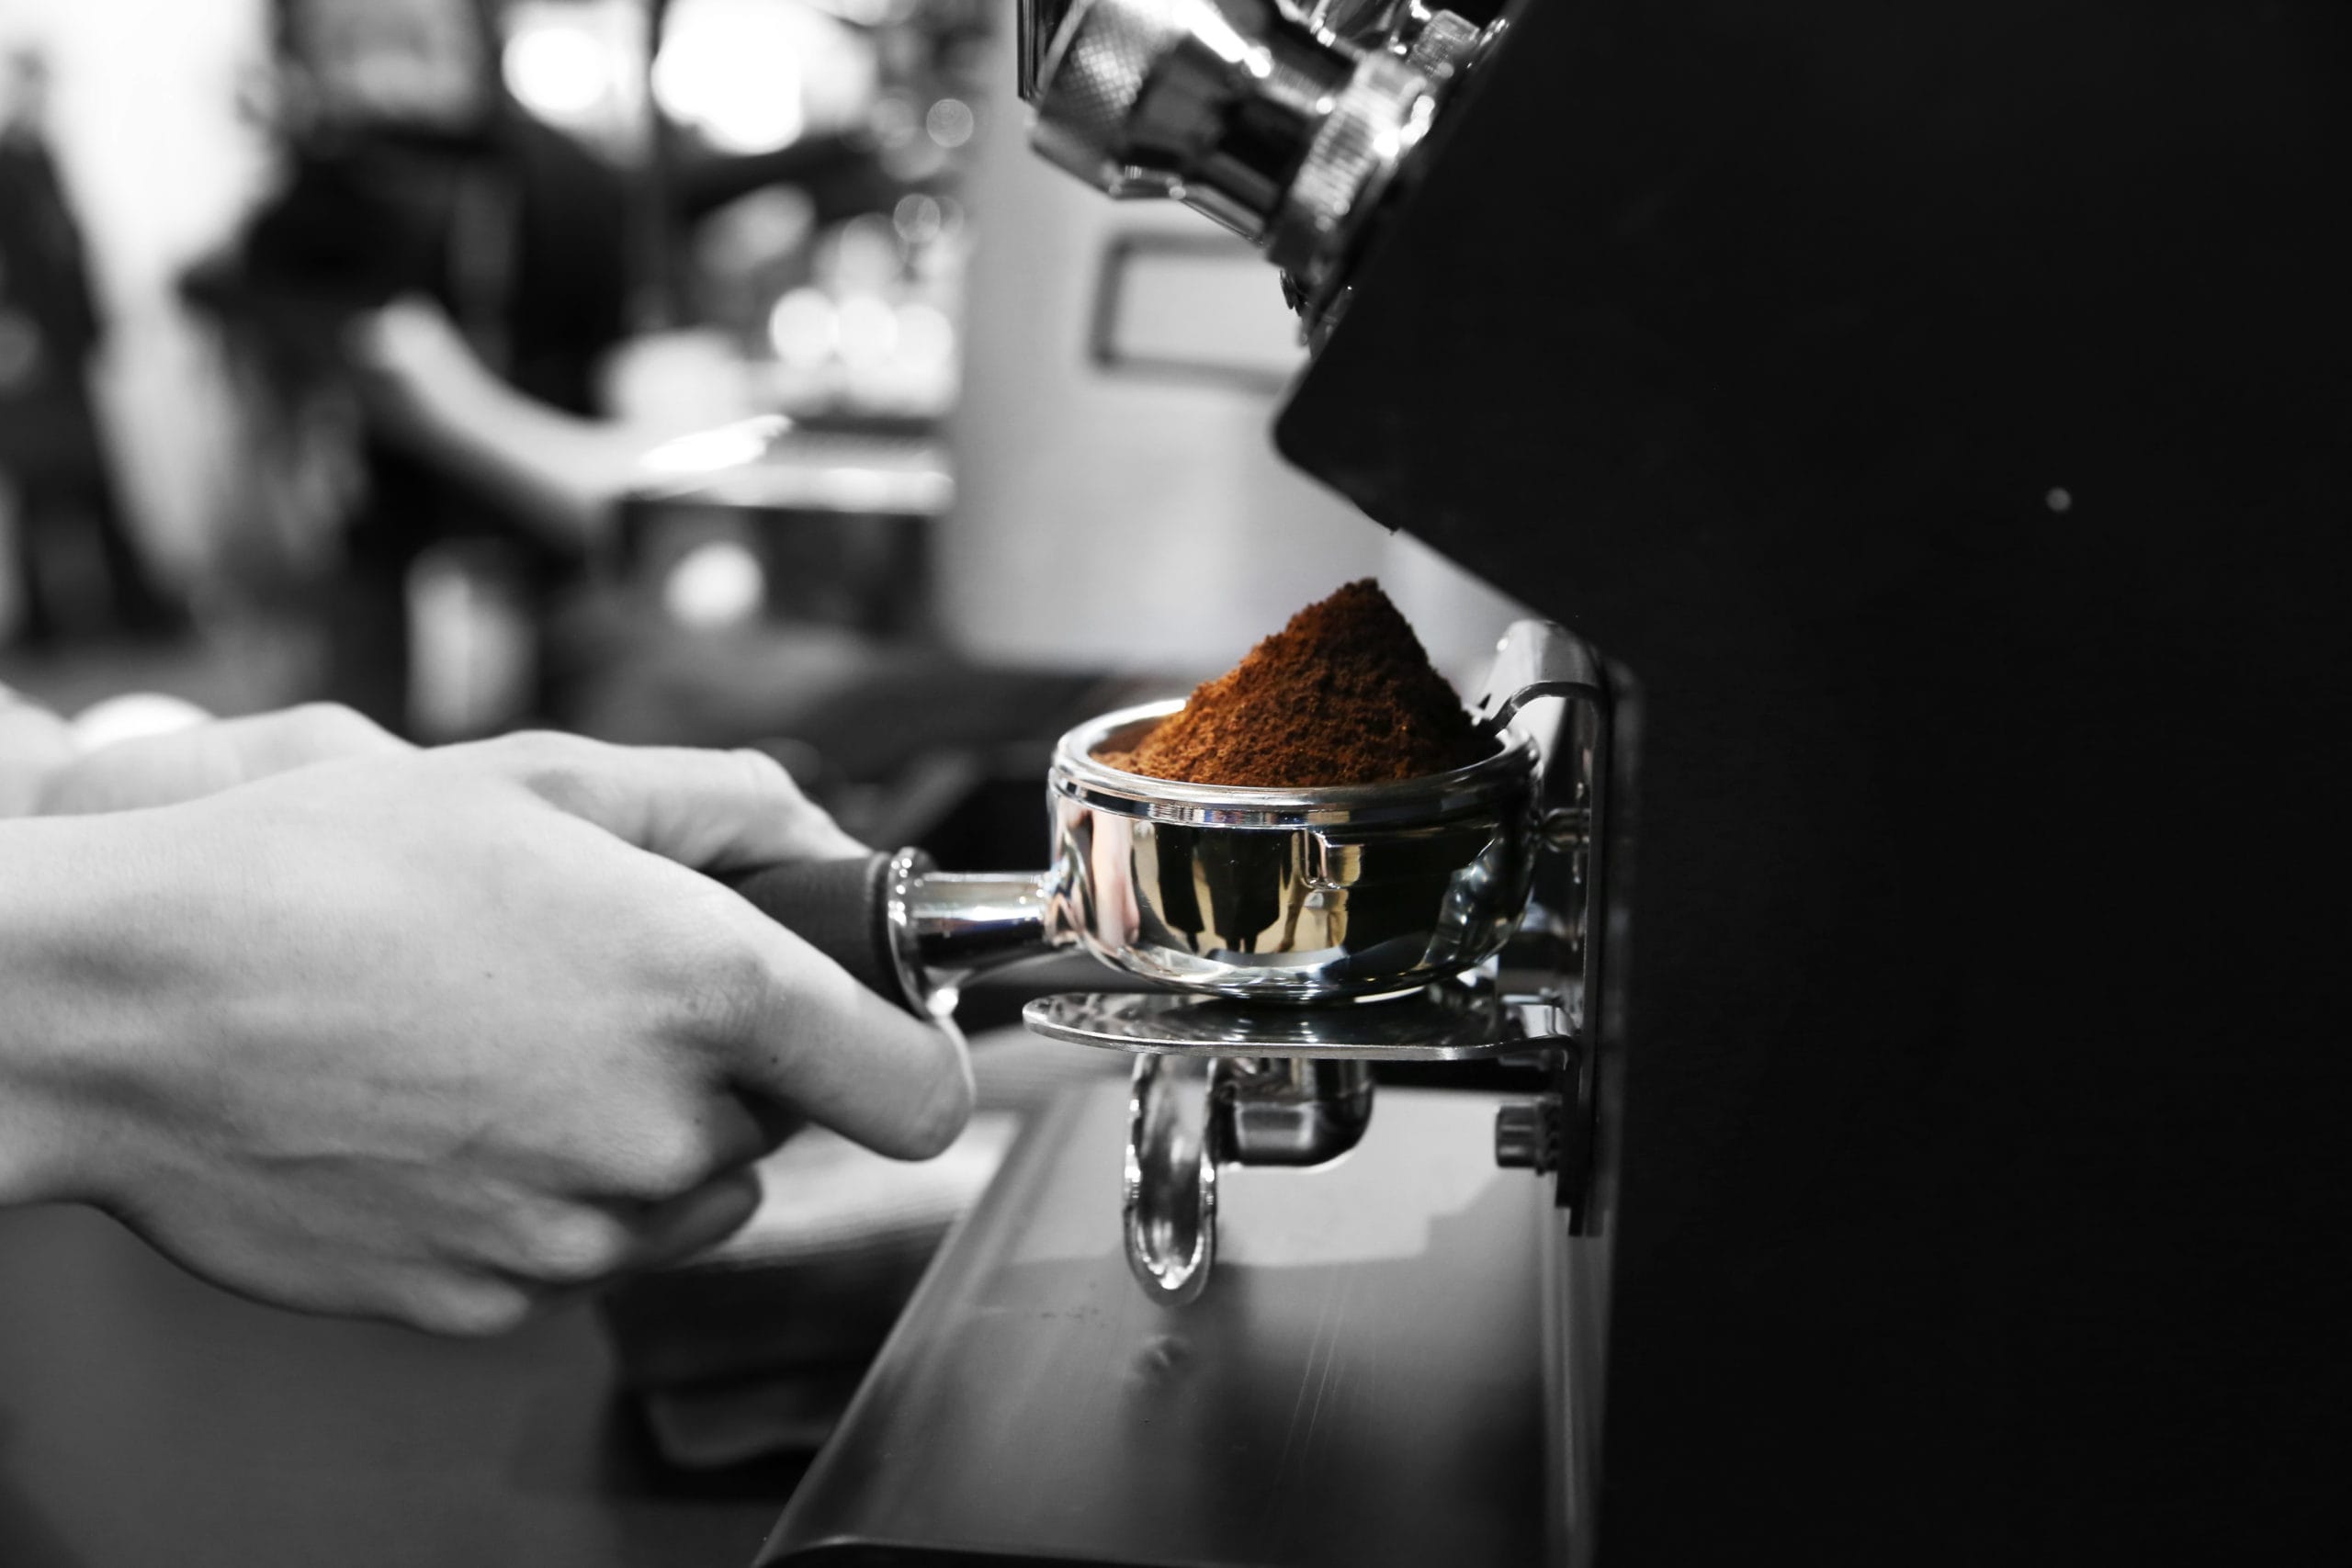 Comment réussir le tassage du café expresso ? - L'Arbre à Café